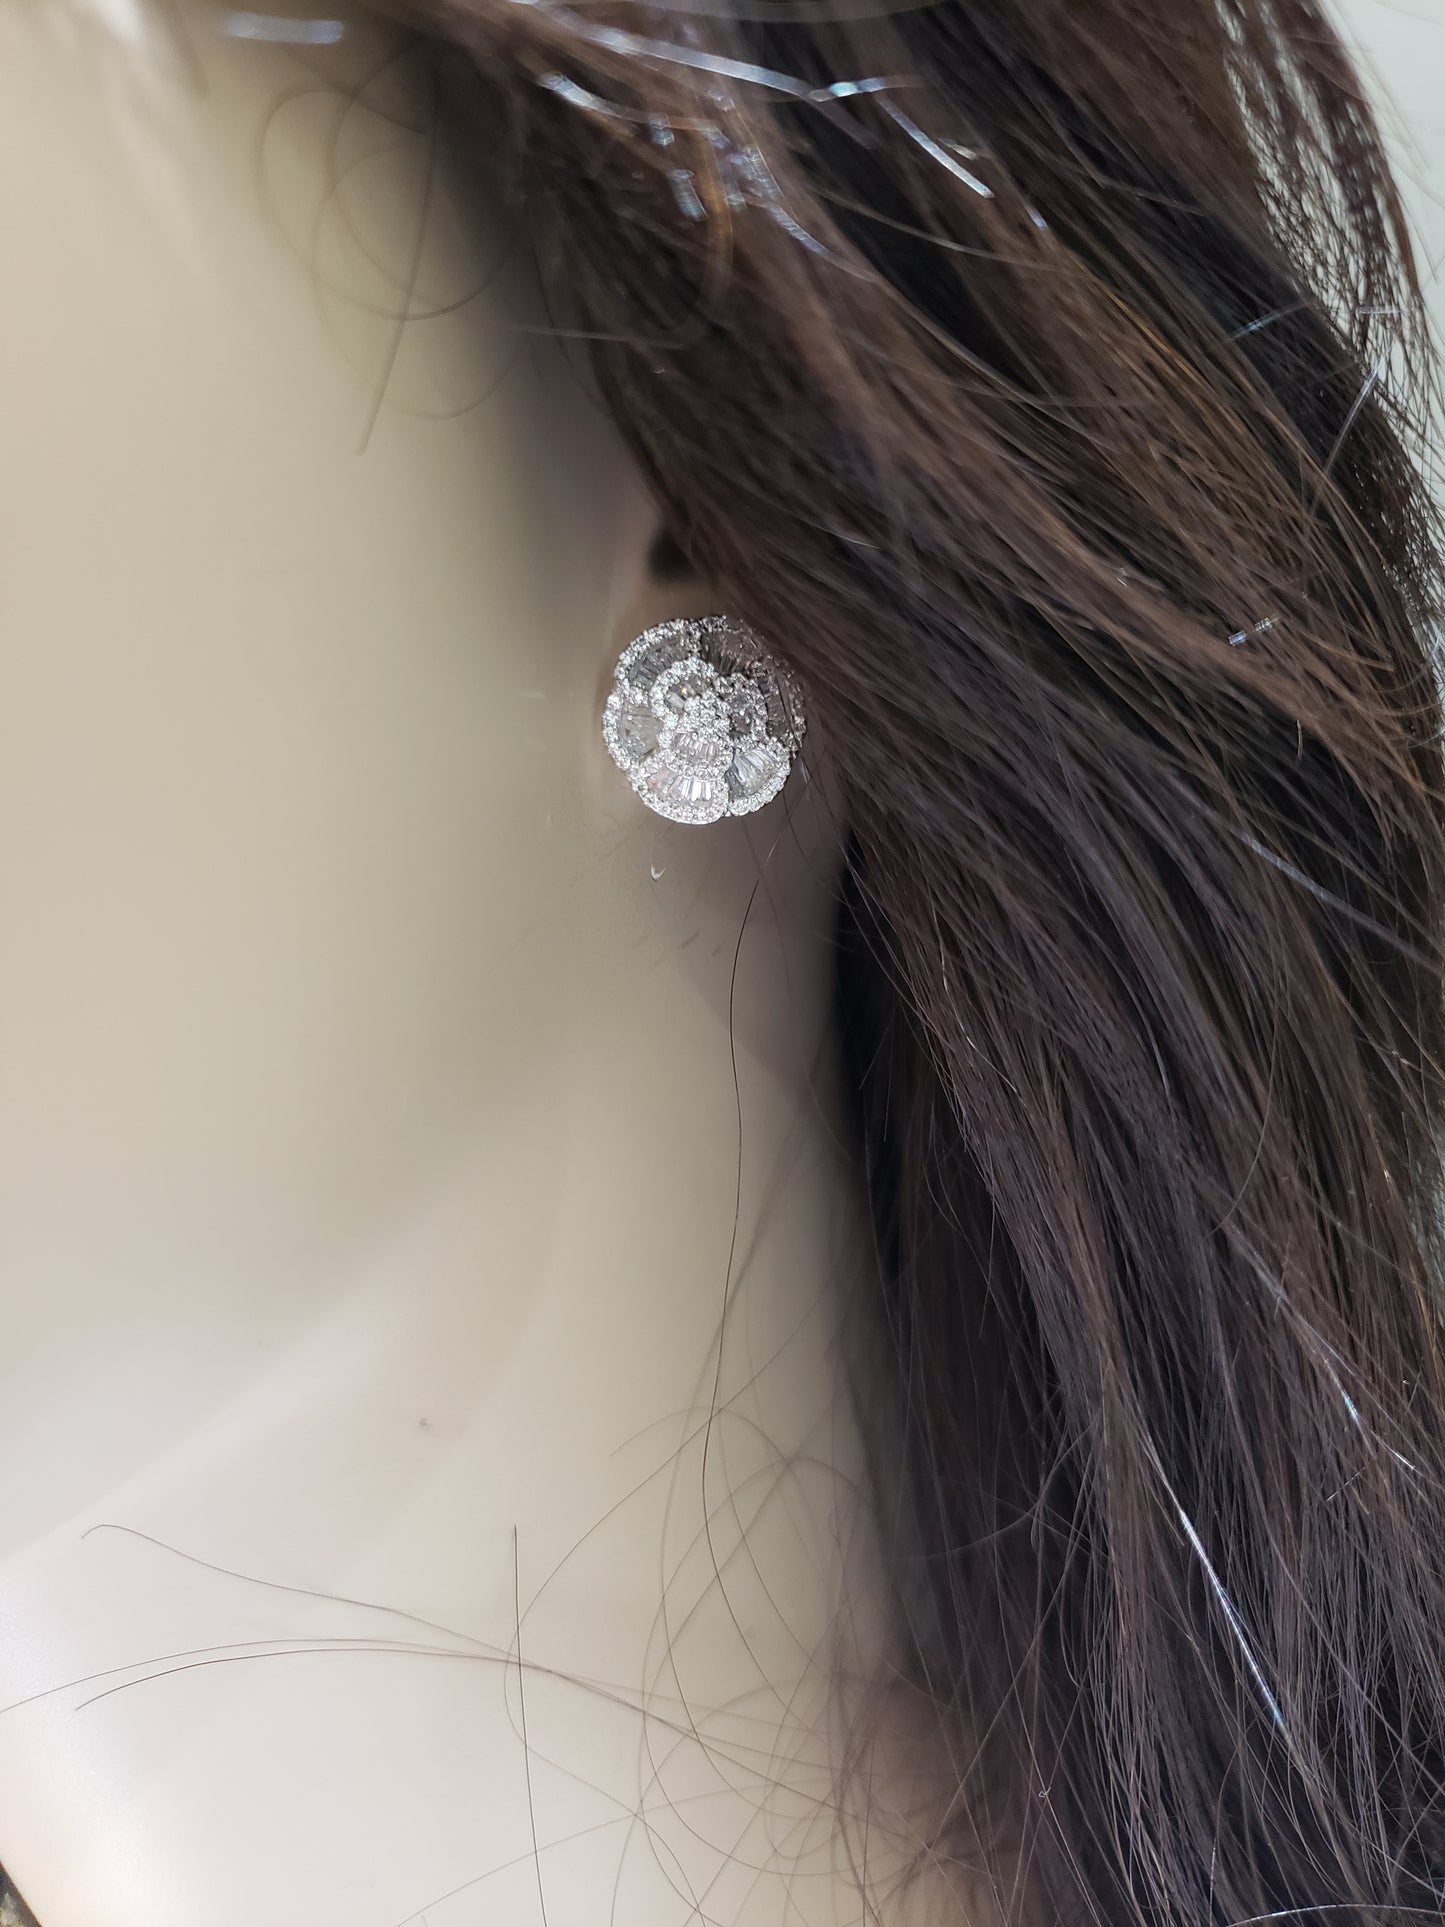 Sterling Silver Flower Stud Earrings - HK Jewels